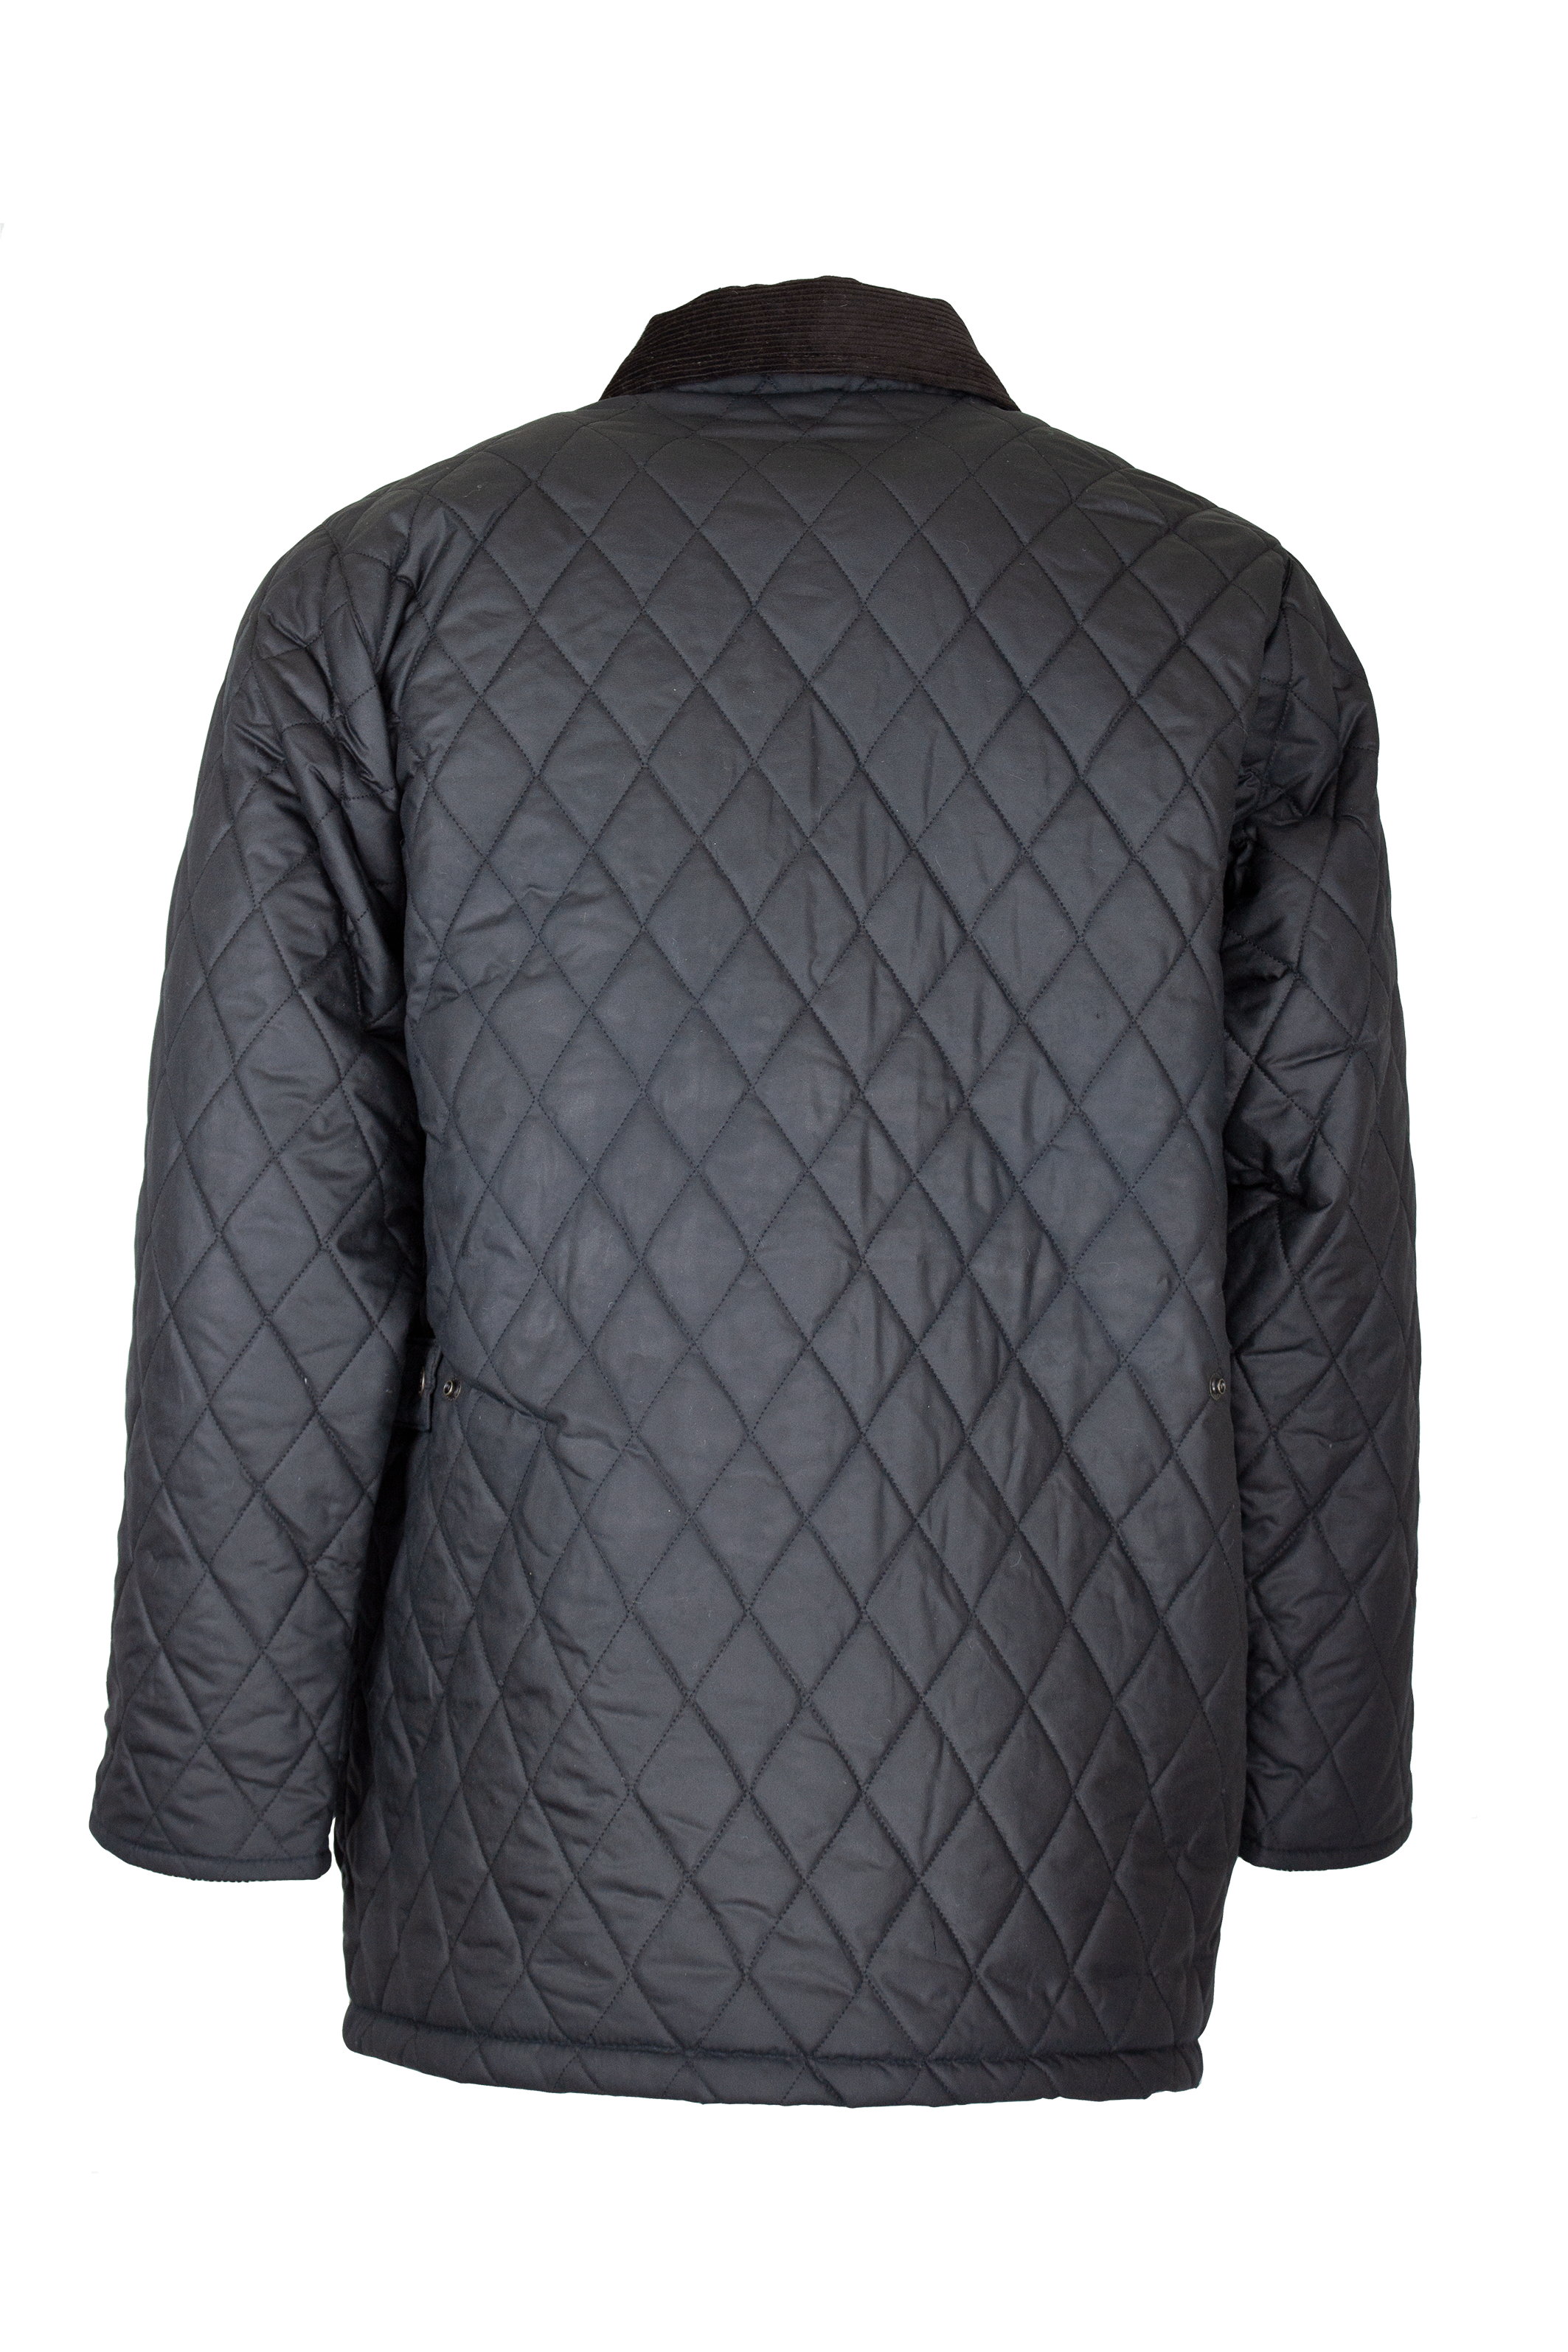 W27 - Men's Aarhus Quilted Wax Coat - NAVY